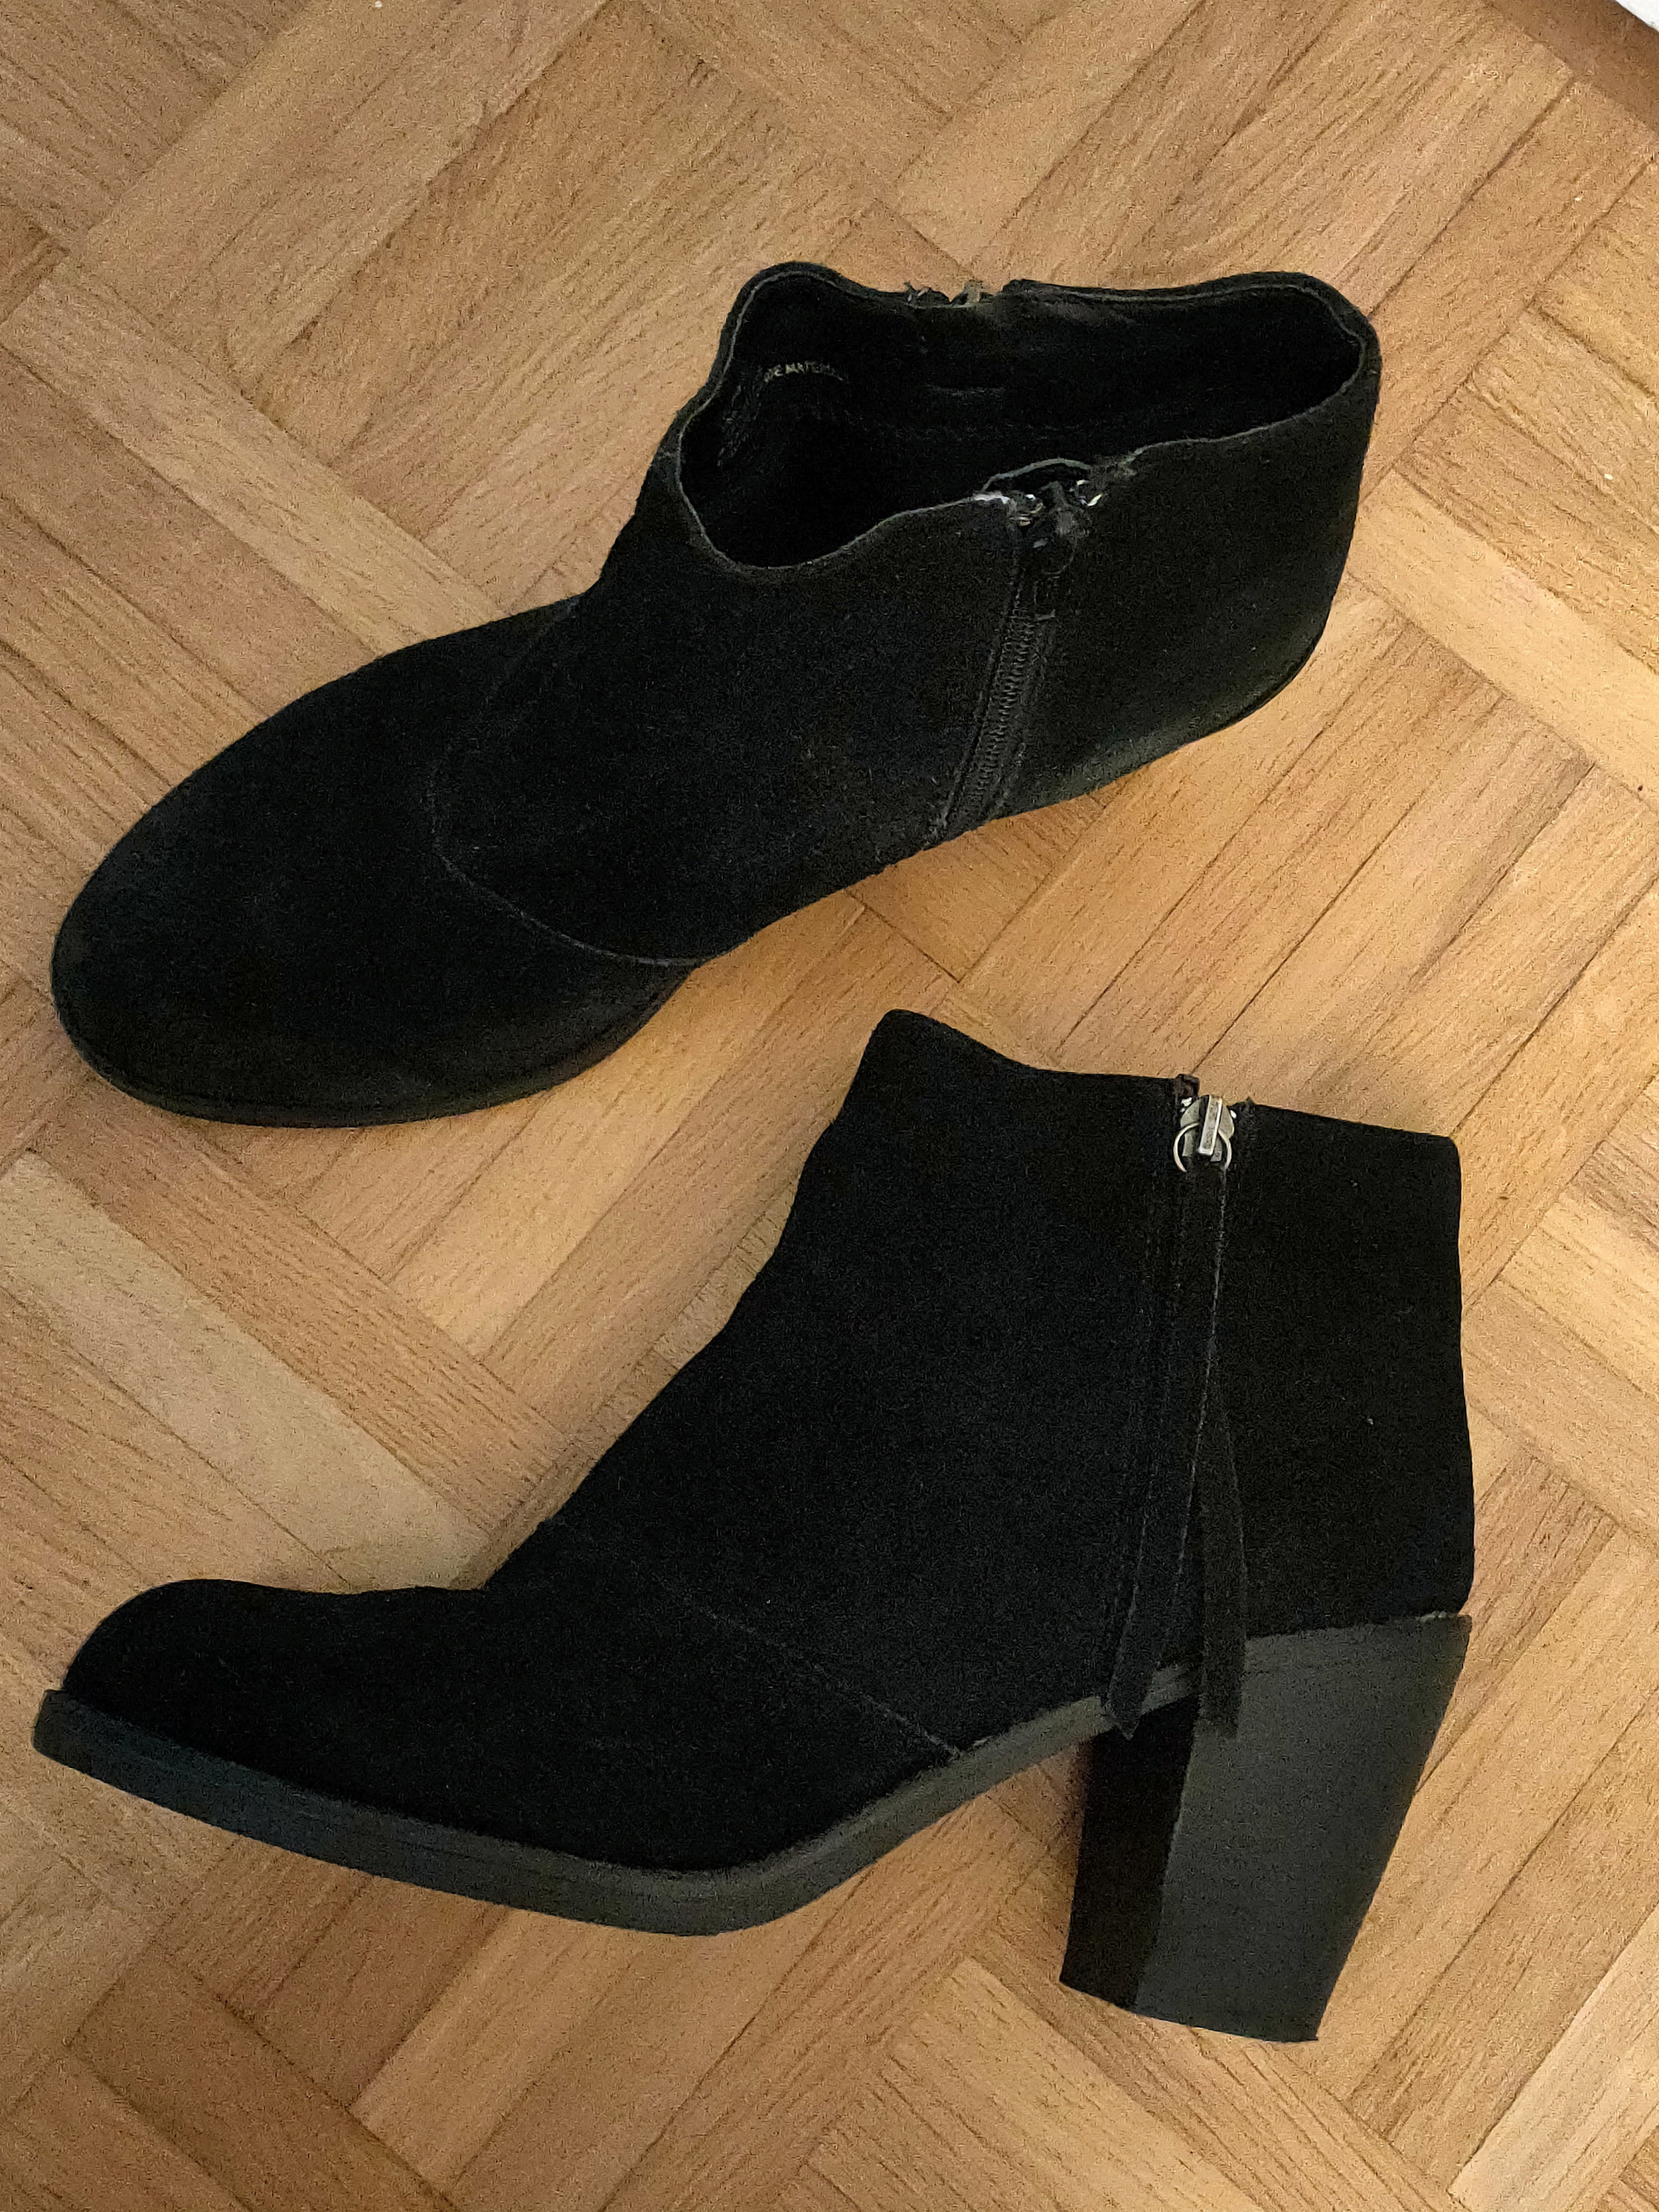 High heel black suede boots